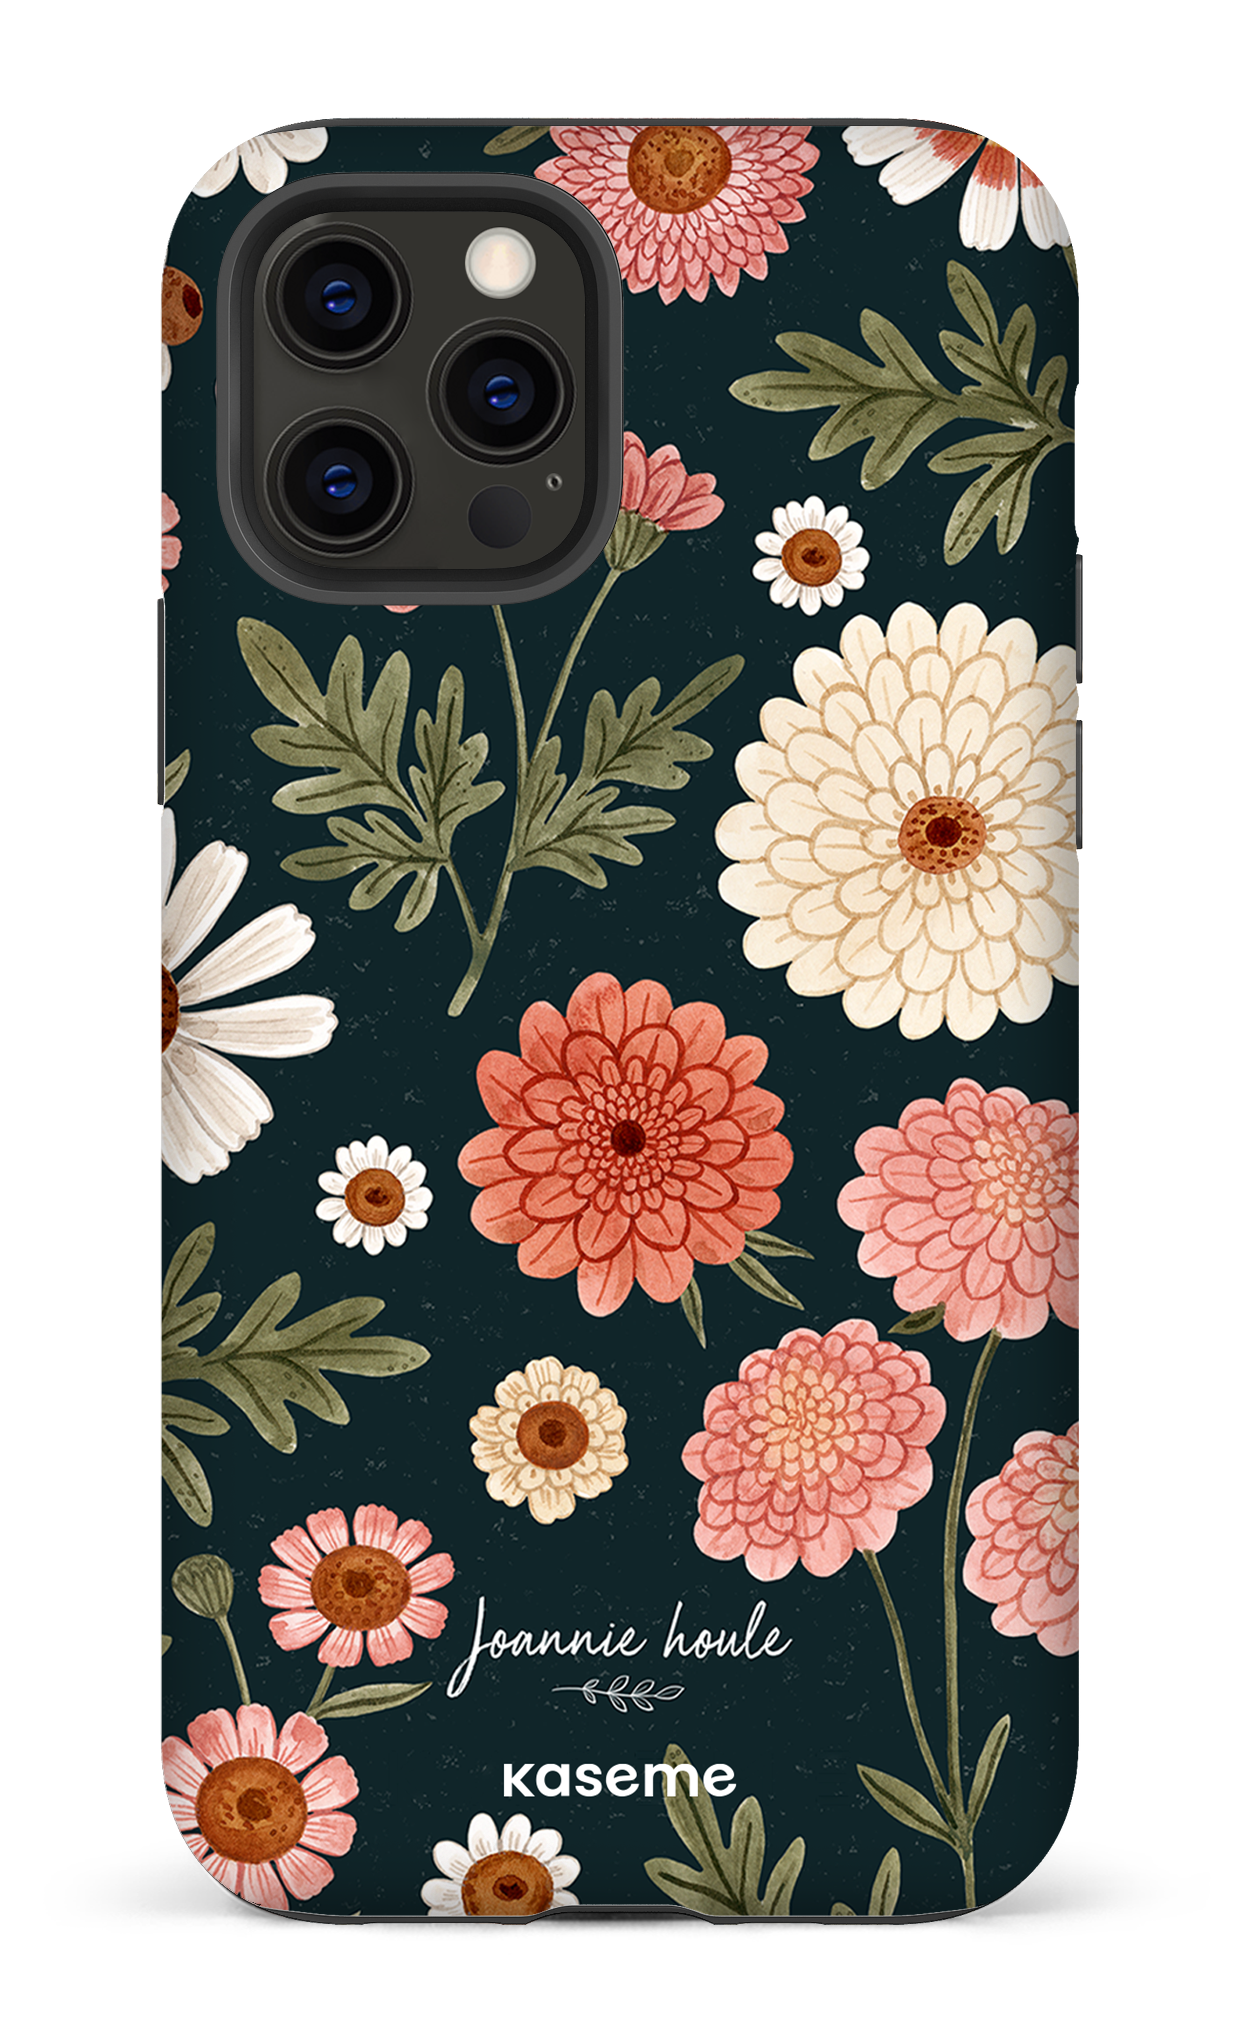 Chrysanthemums by Joannie Houle - iPhone 12 Pro